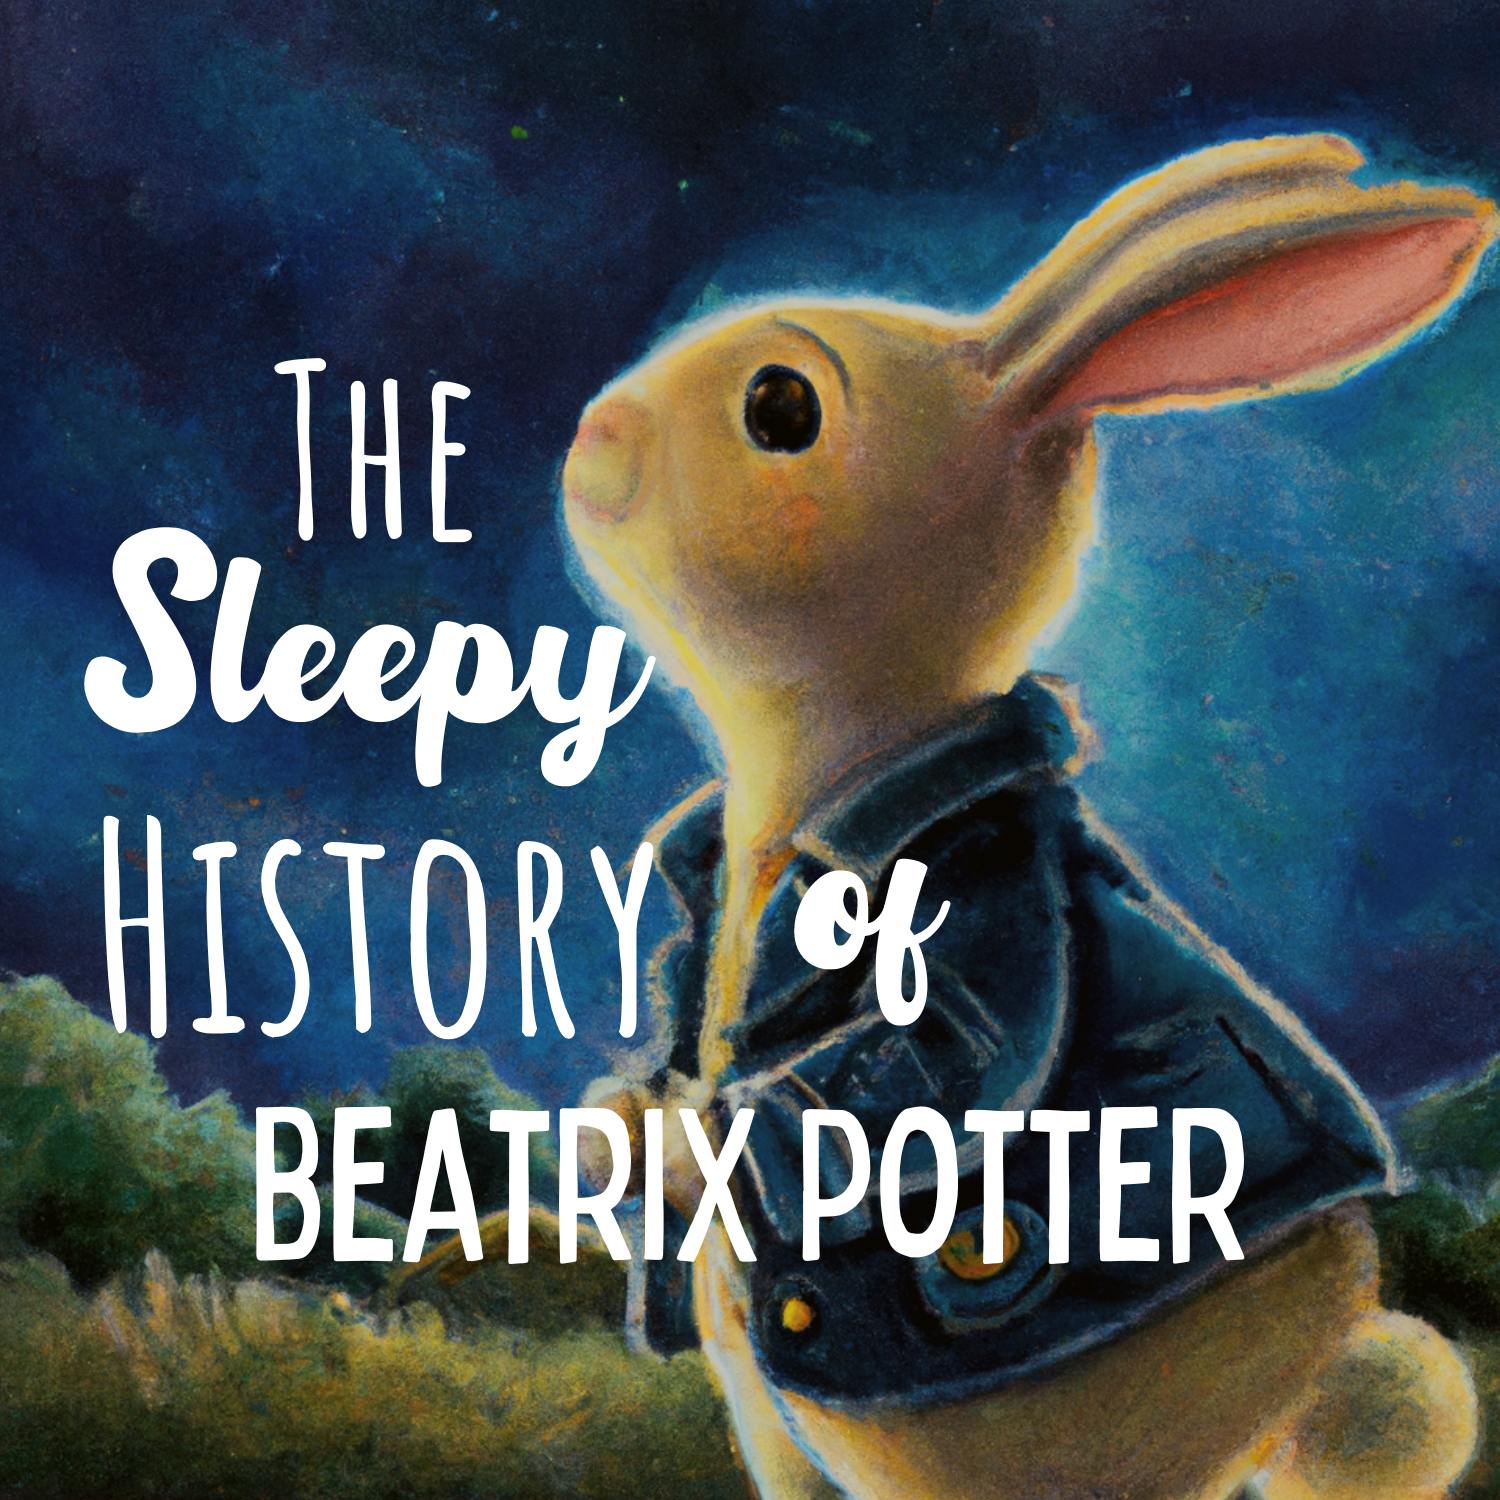 The Sleepy History of Beatrix Potter